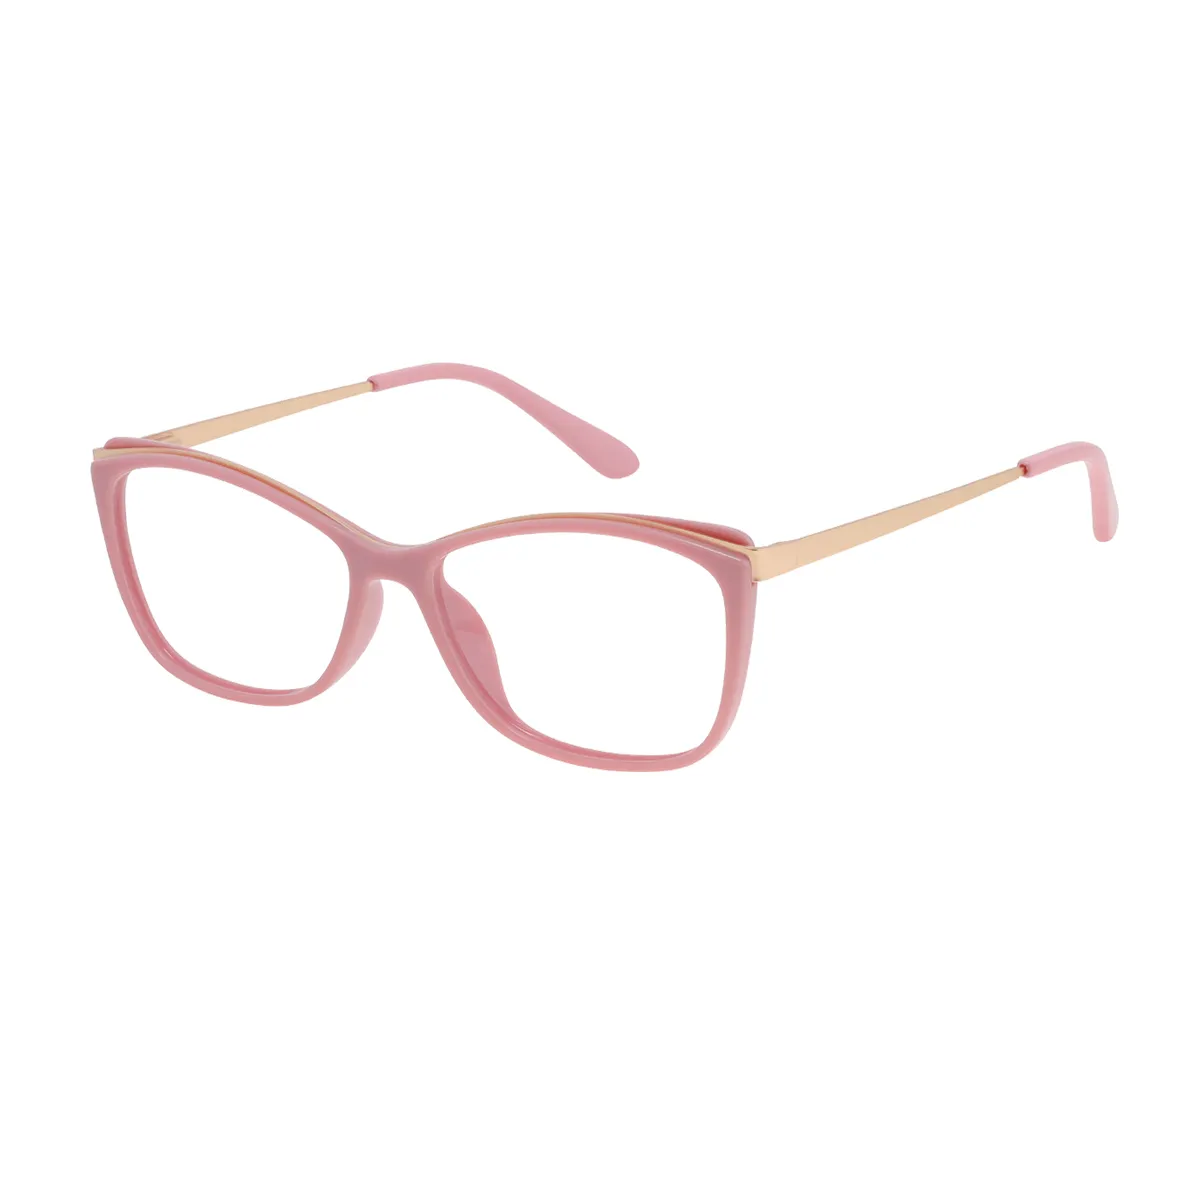 Avice - Cat-eye  Glasses for Women